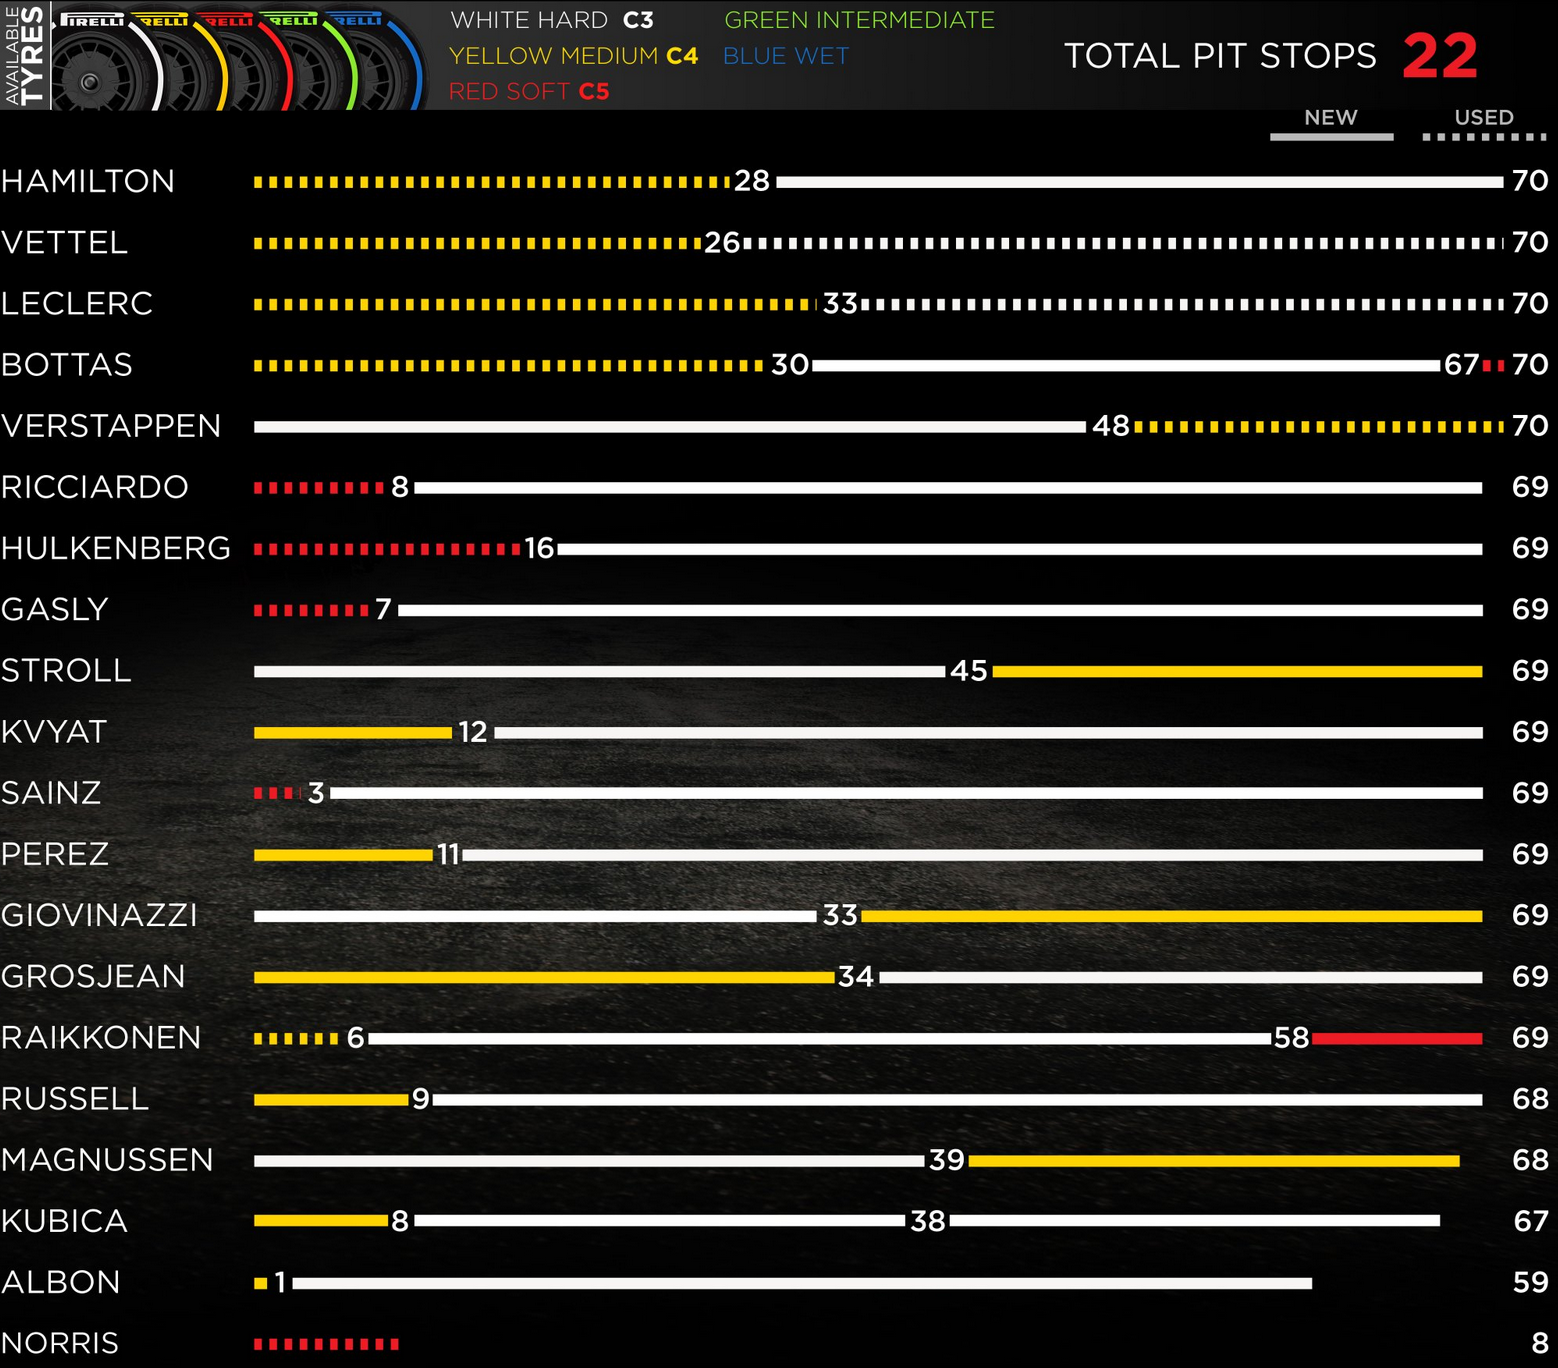 Grafický přehled pneumatikových strategií GP Kanady